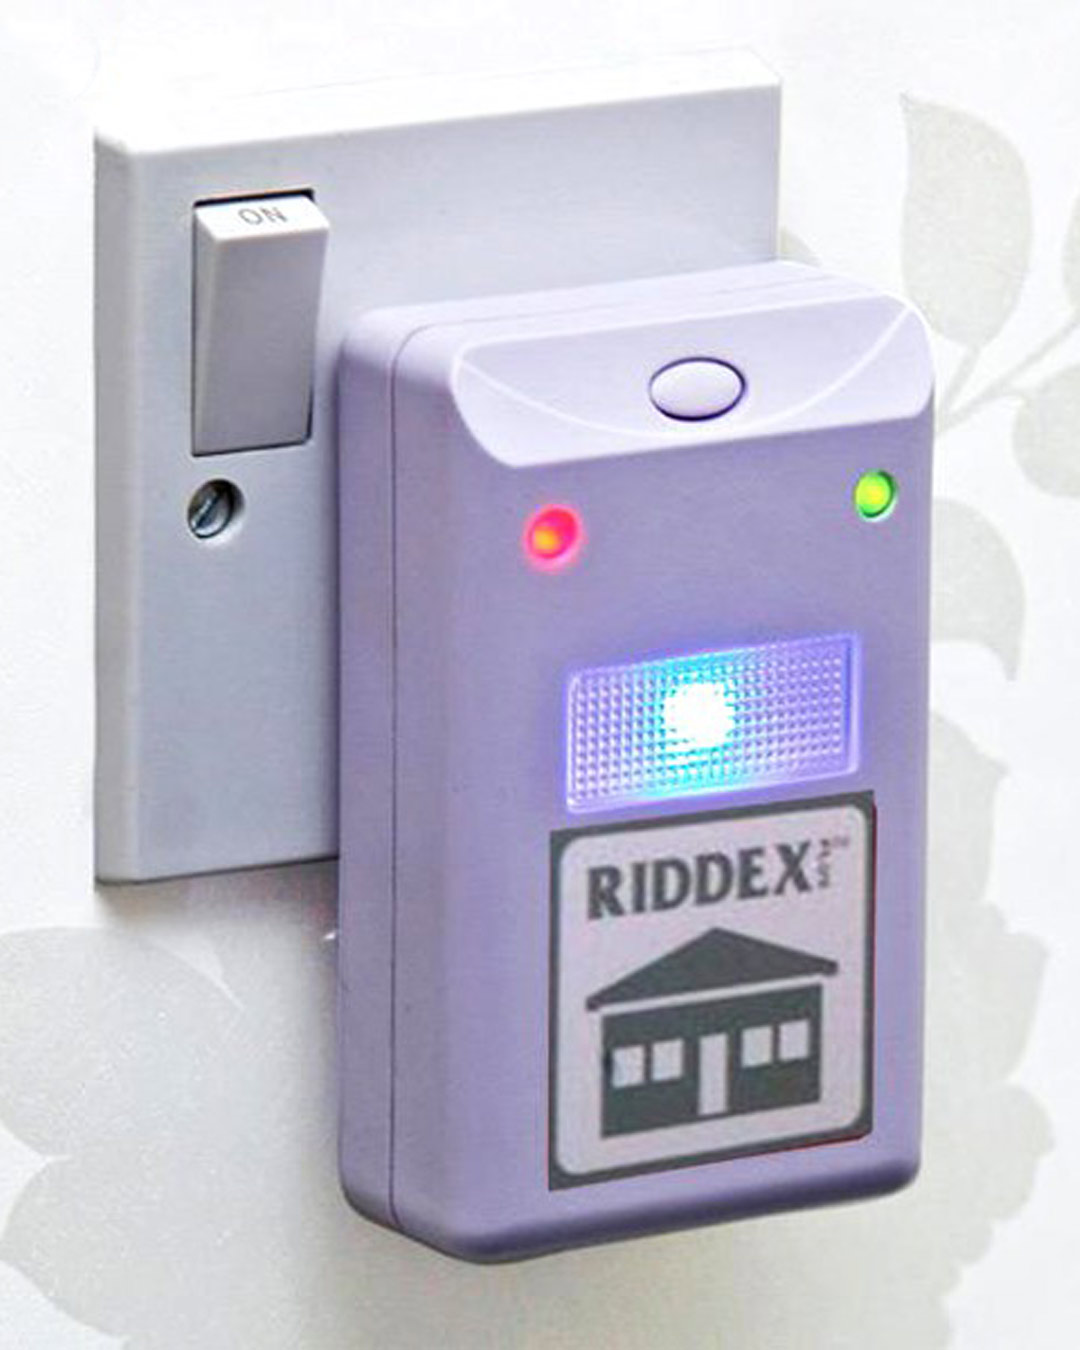 حشره کش برقی مدل RIDDEX